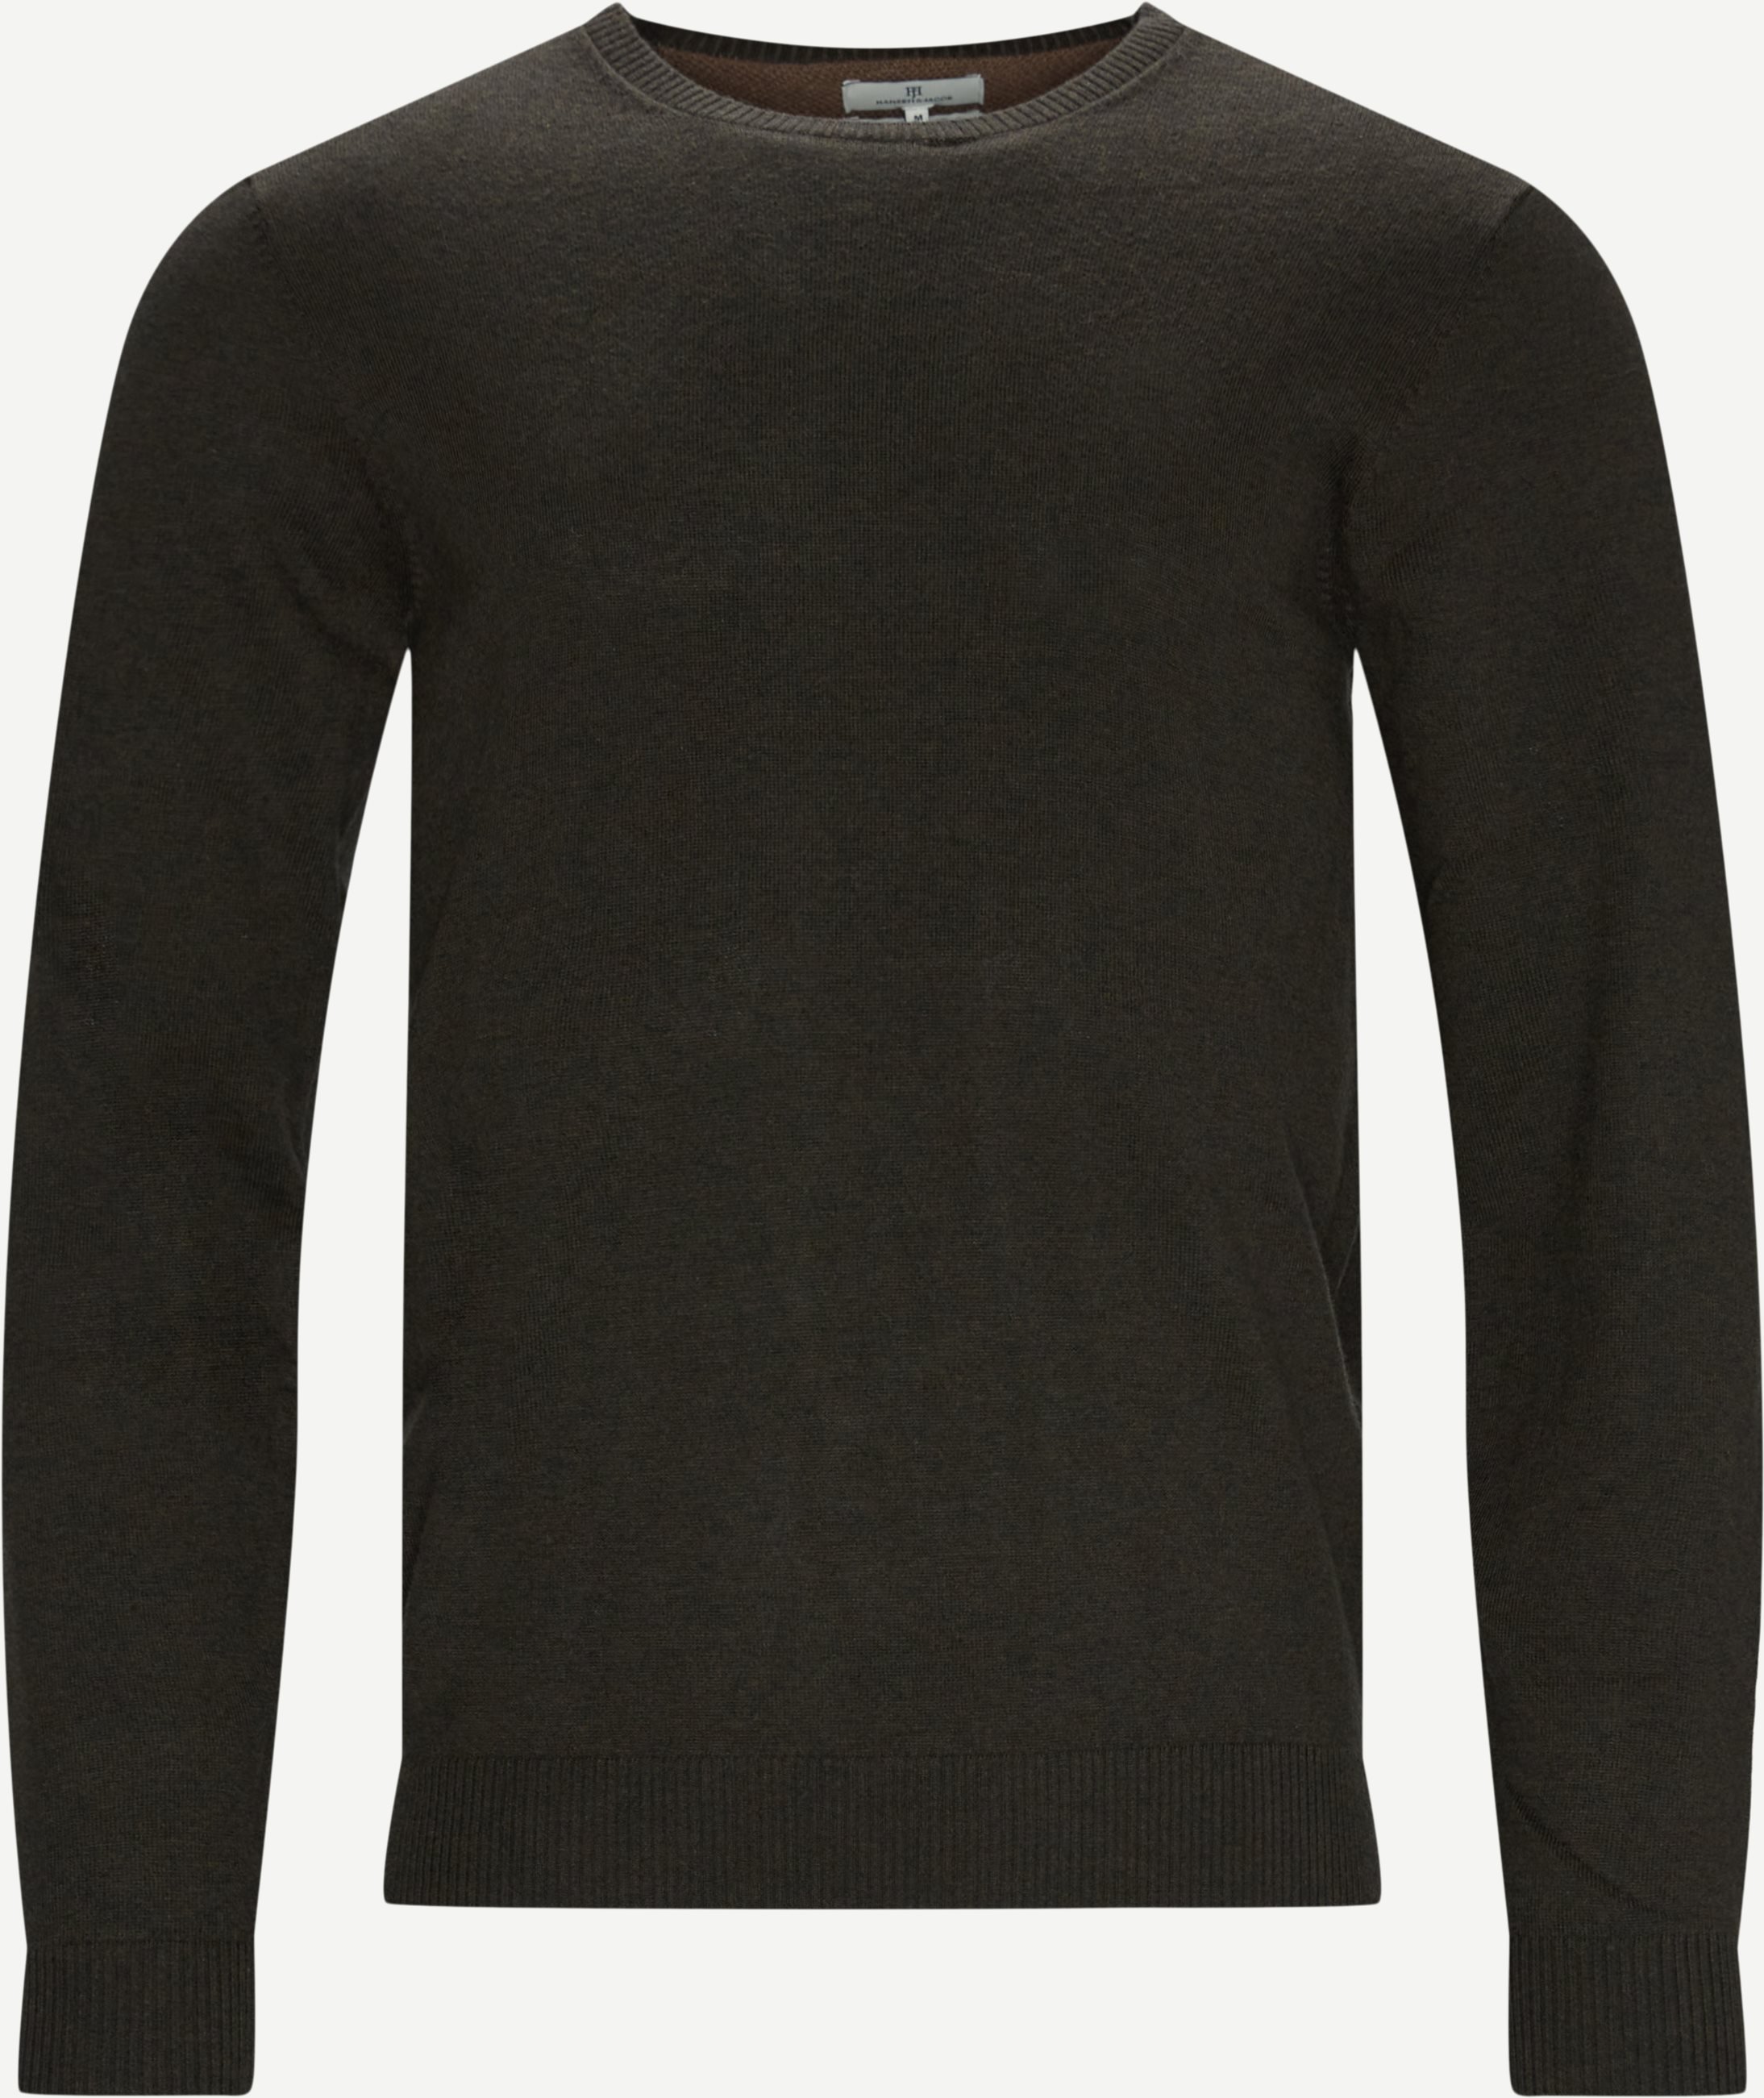 Pullover mit Rundhalsausschnitt Alcanta Strik - Strickwaren - Regular fit - Oliv